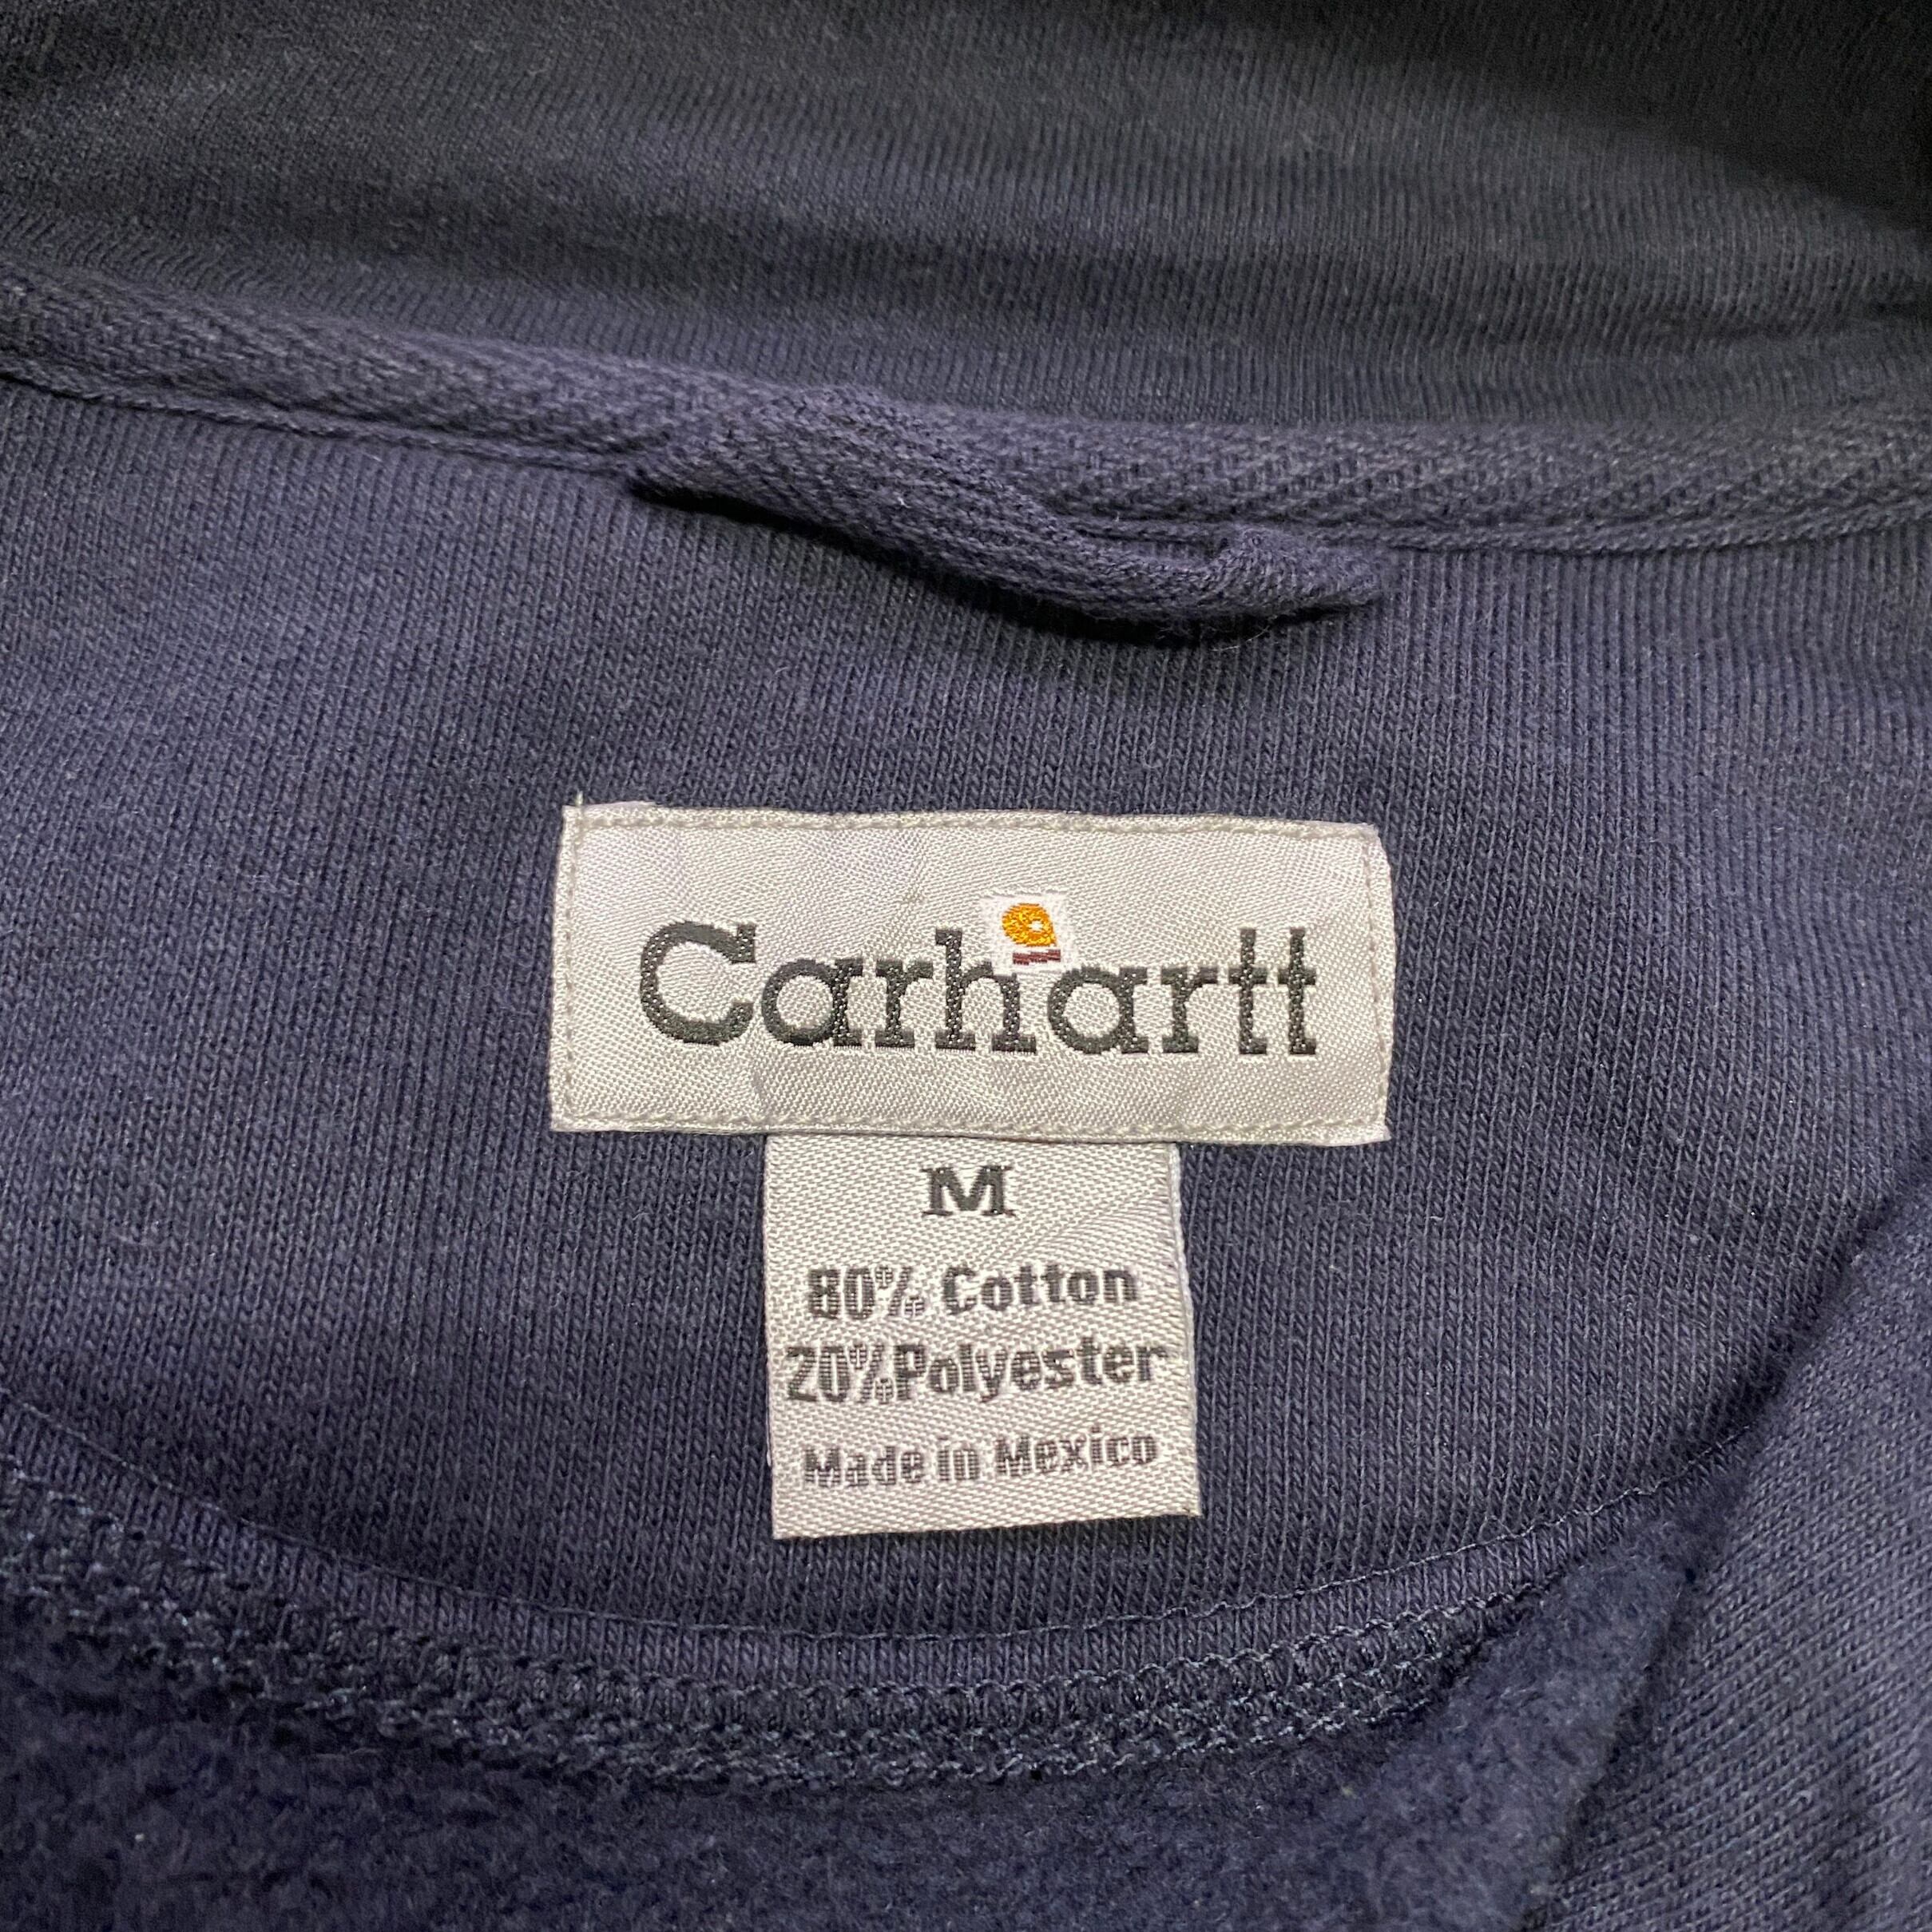 Carhartt,ハーフジップ,スウェット,,メキシコ製,刺繍